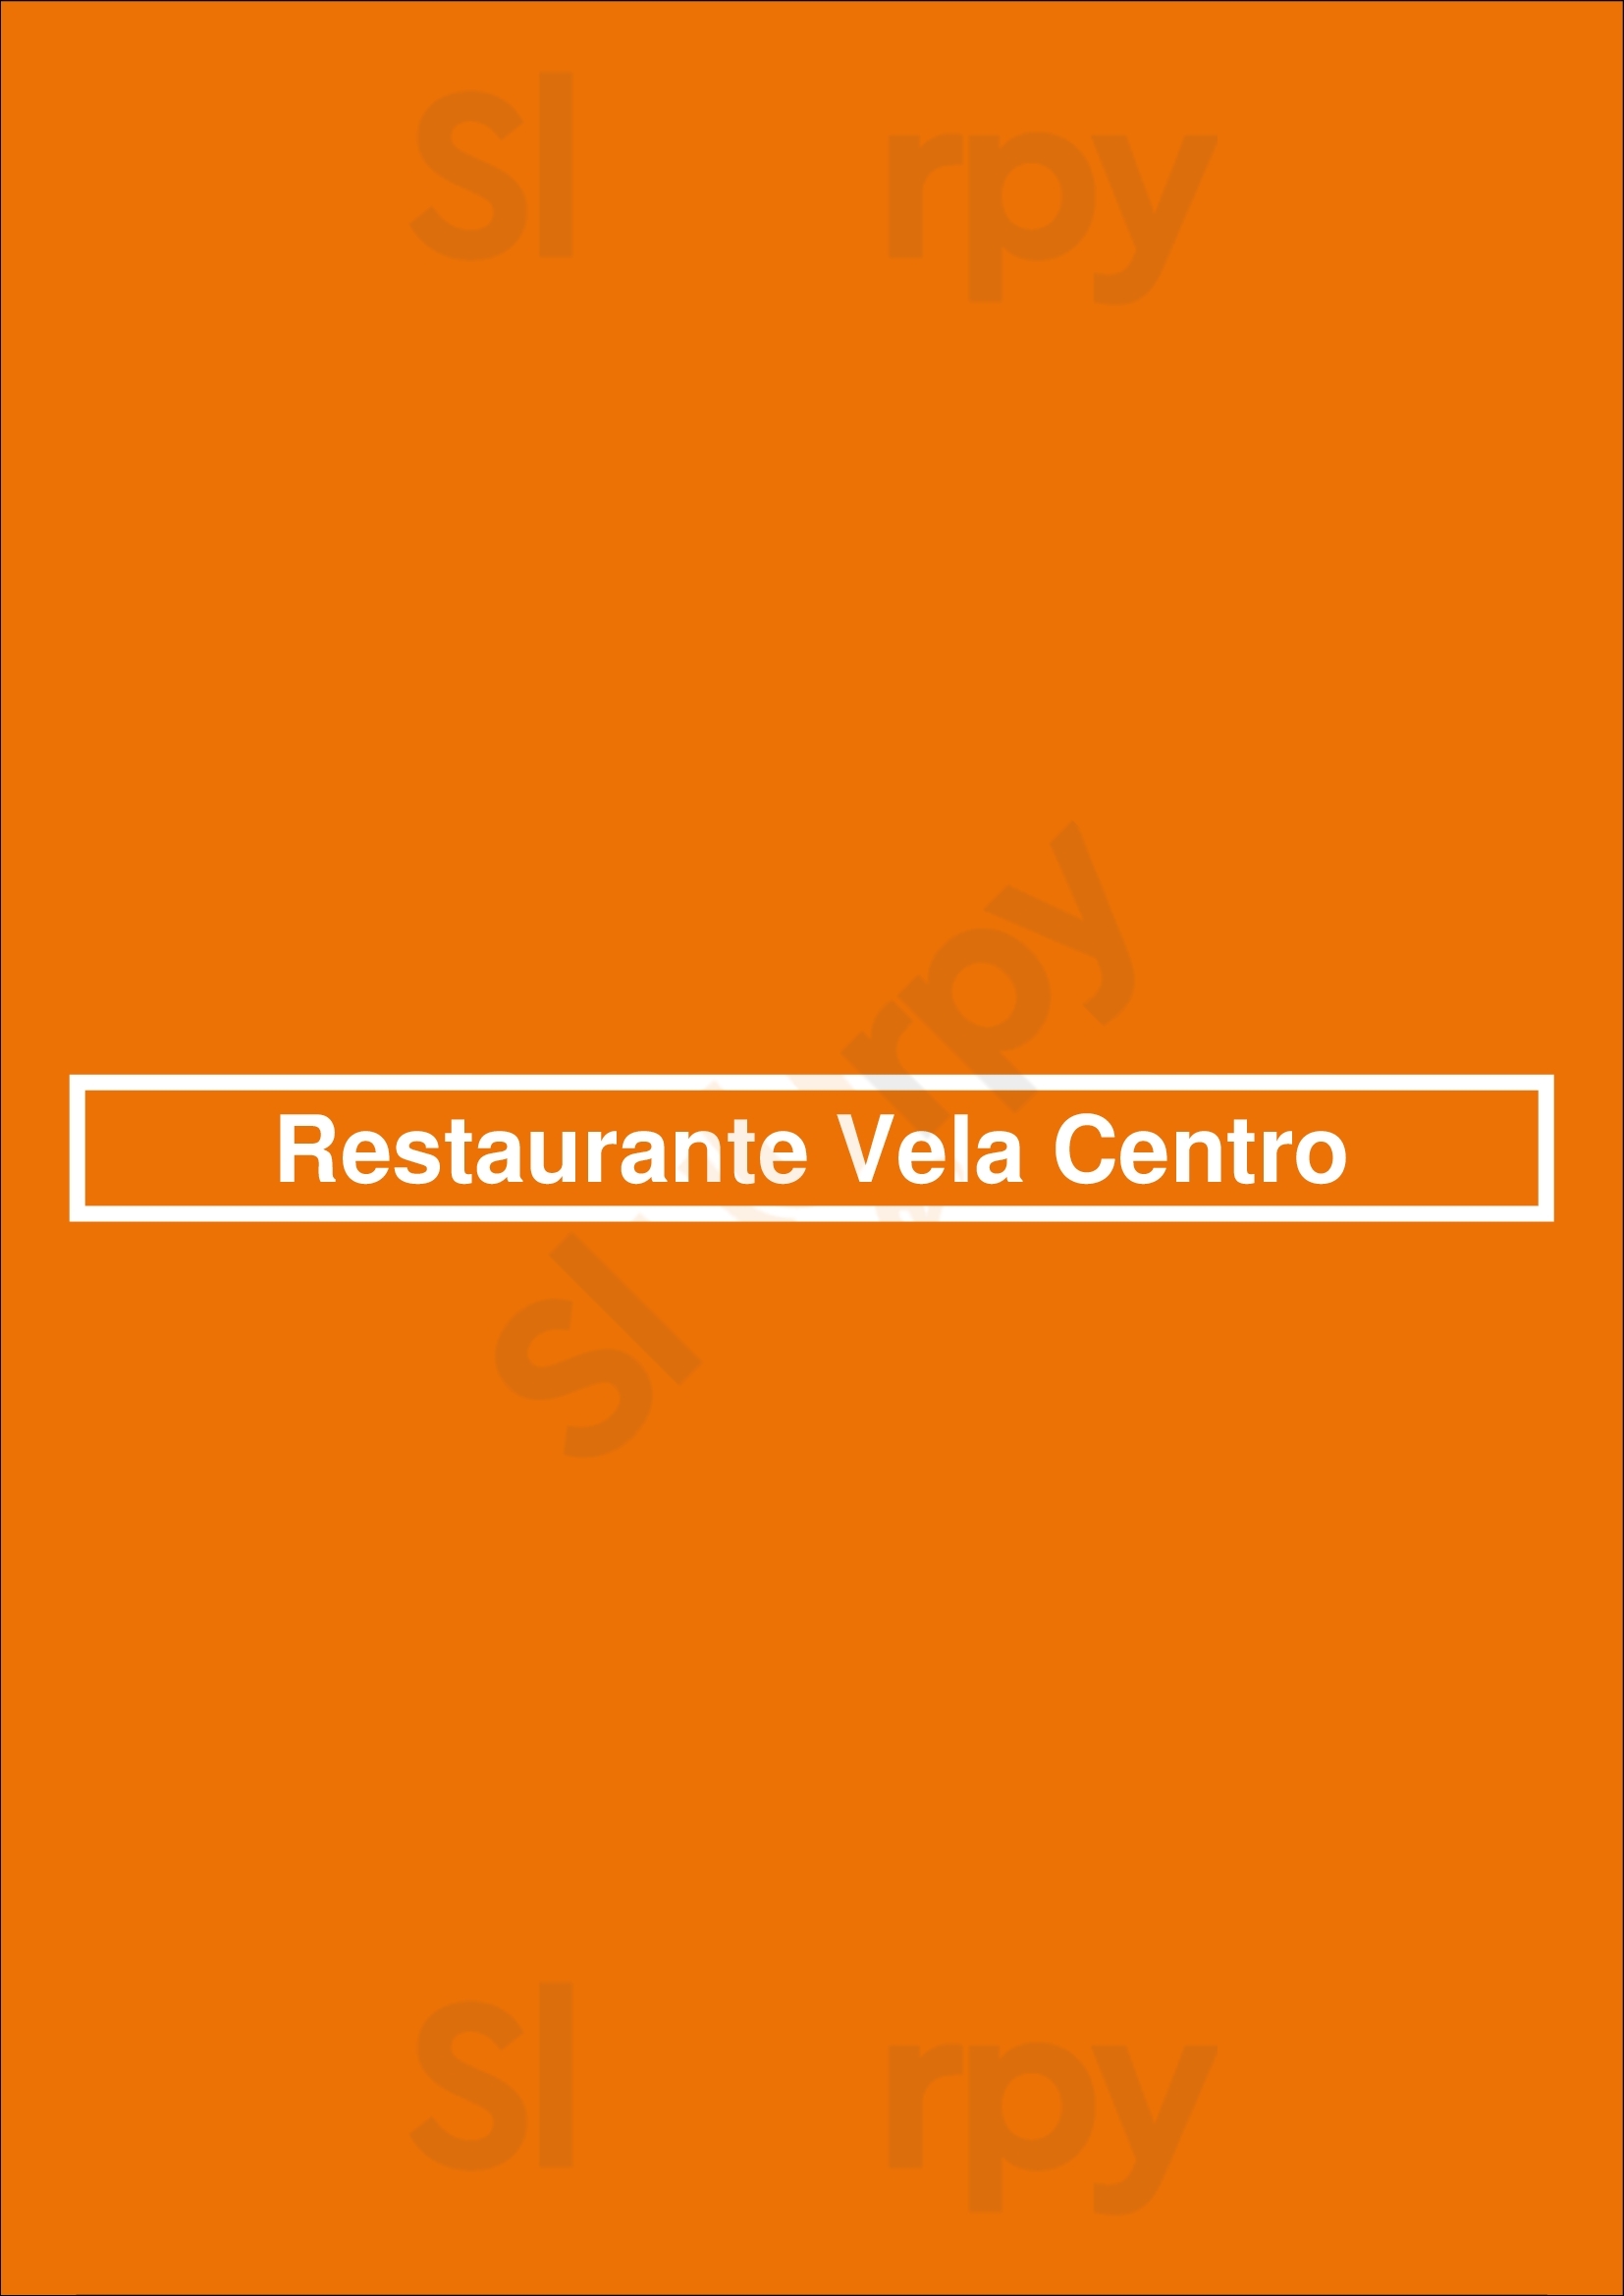 Restaurante Vela Centro Torrevieja Menu - 1